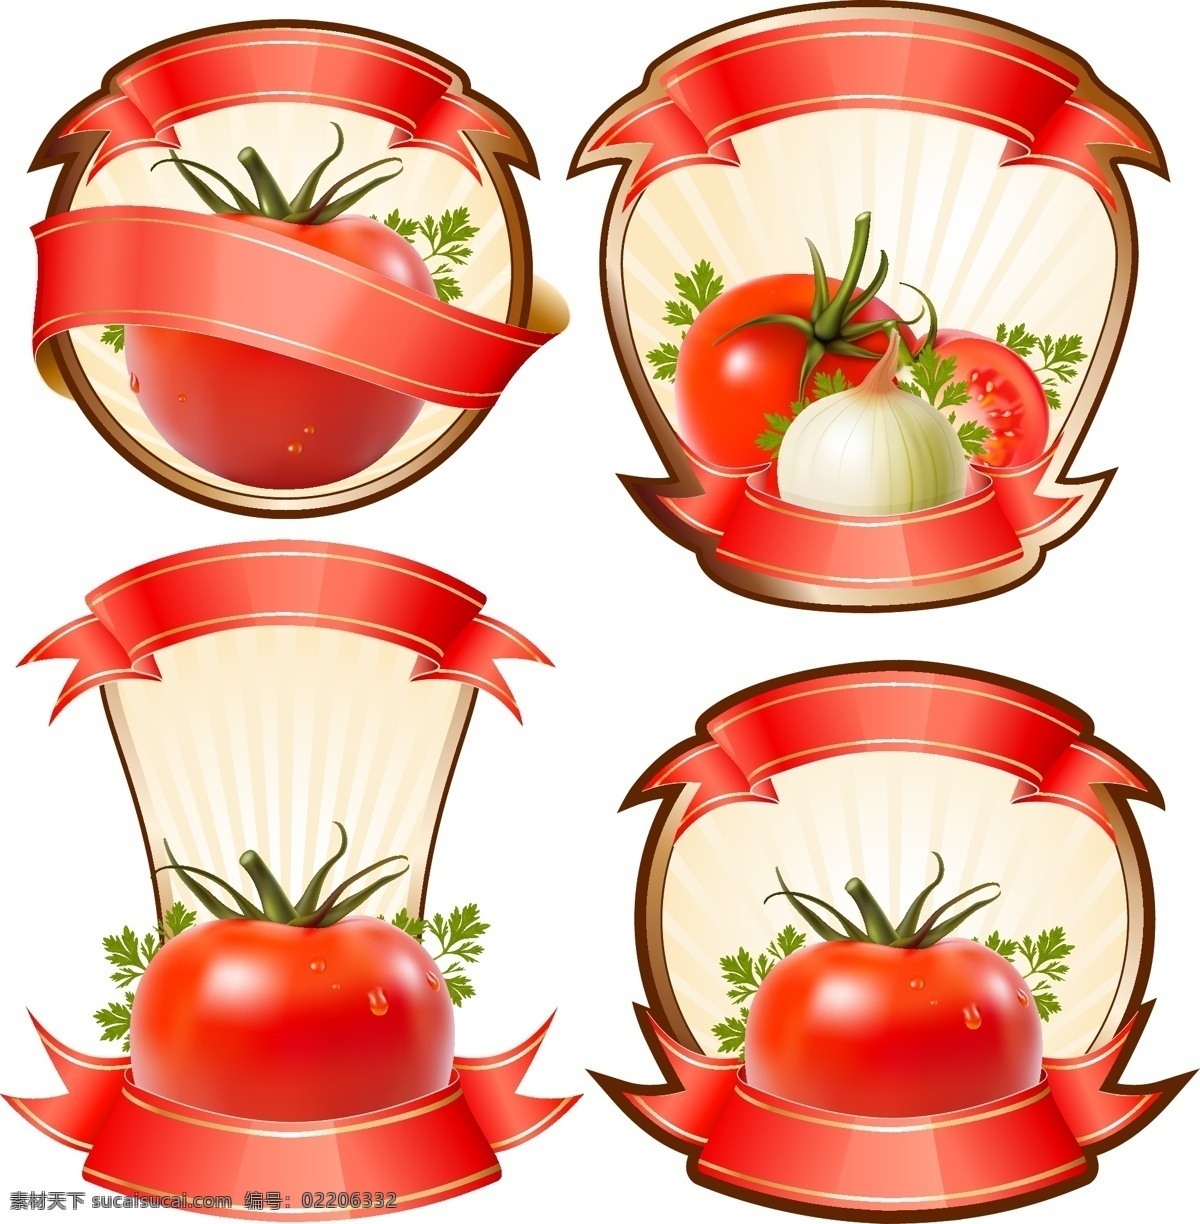 丝带 矢量 图形 番茄 标签 缎带 矢量食物 矢量图形 其他矢量图